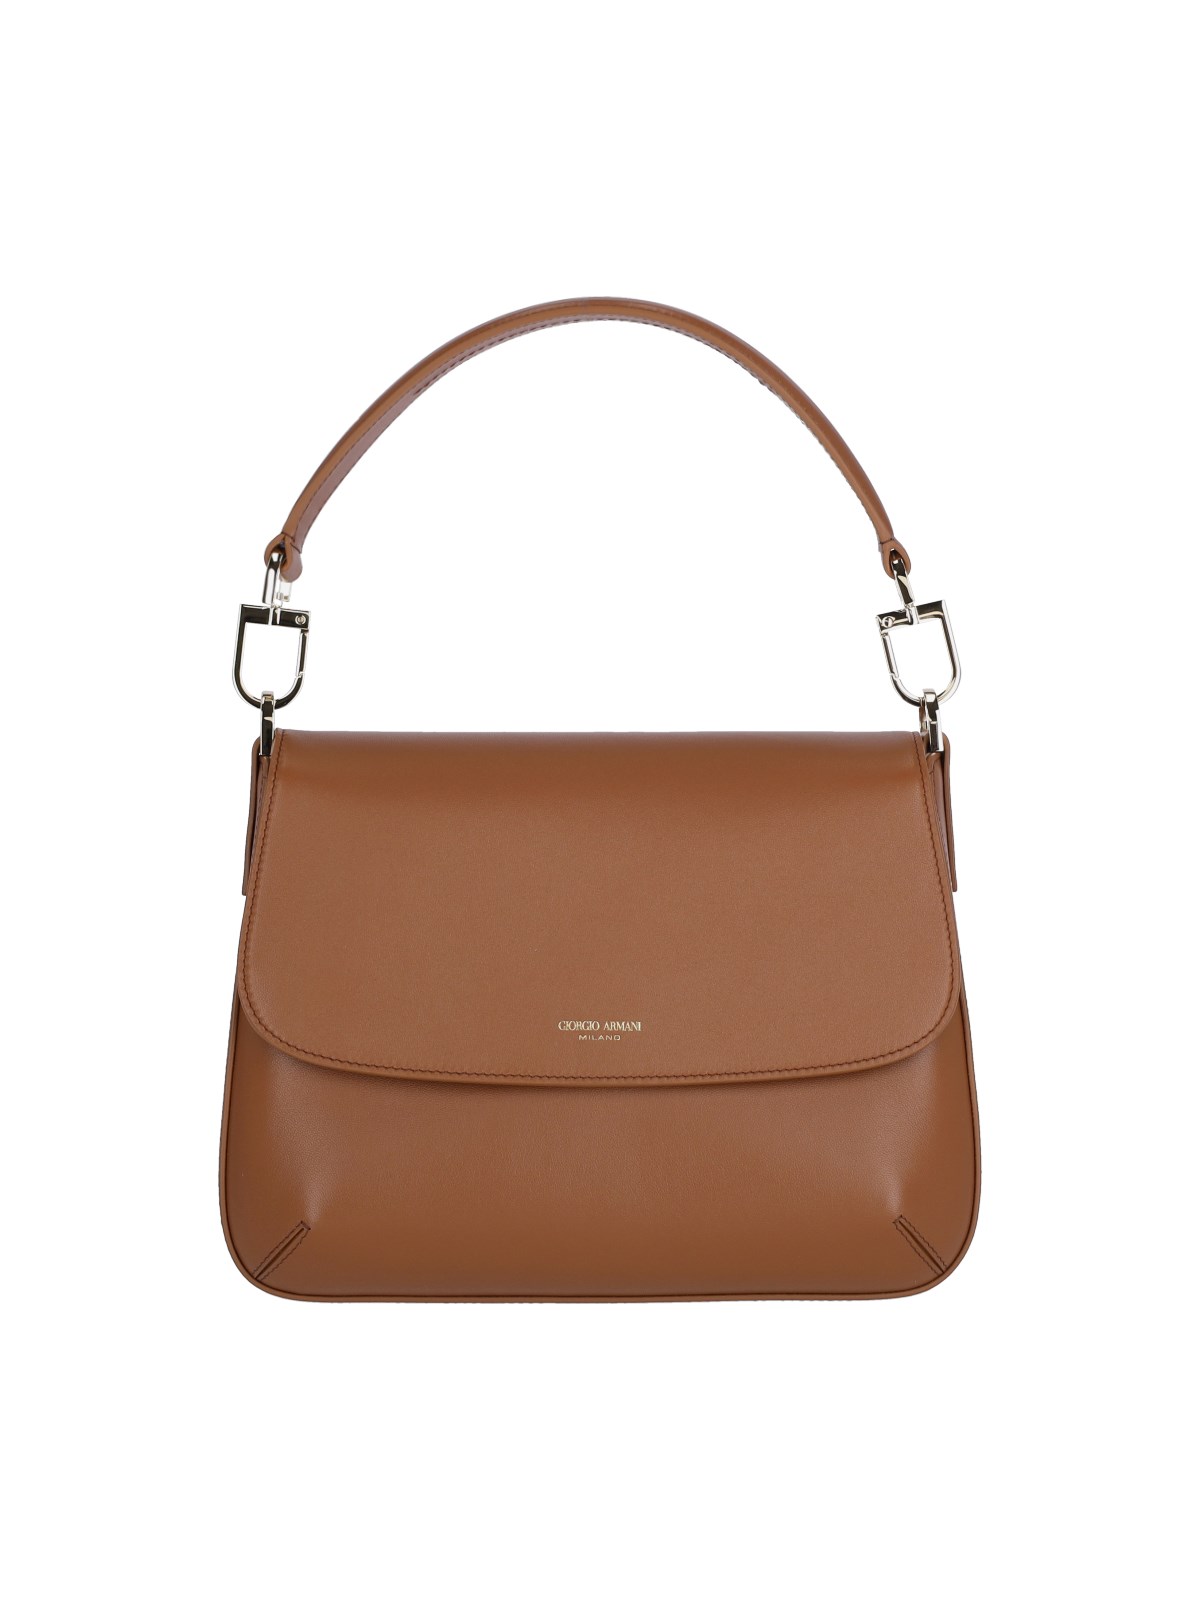 Giorgio Armani 'la Prima Soft' Handbag In Brown